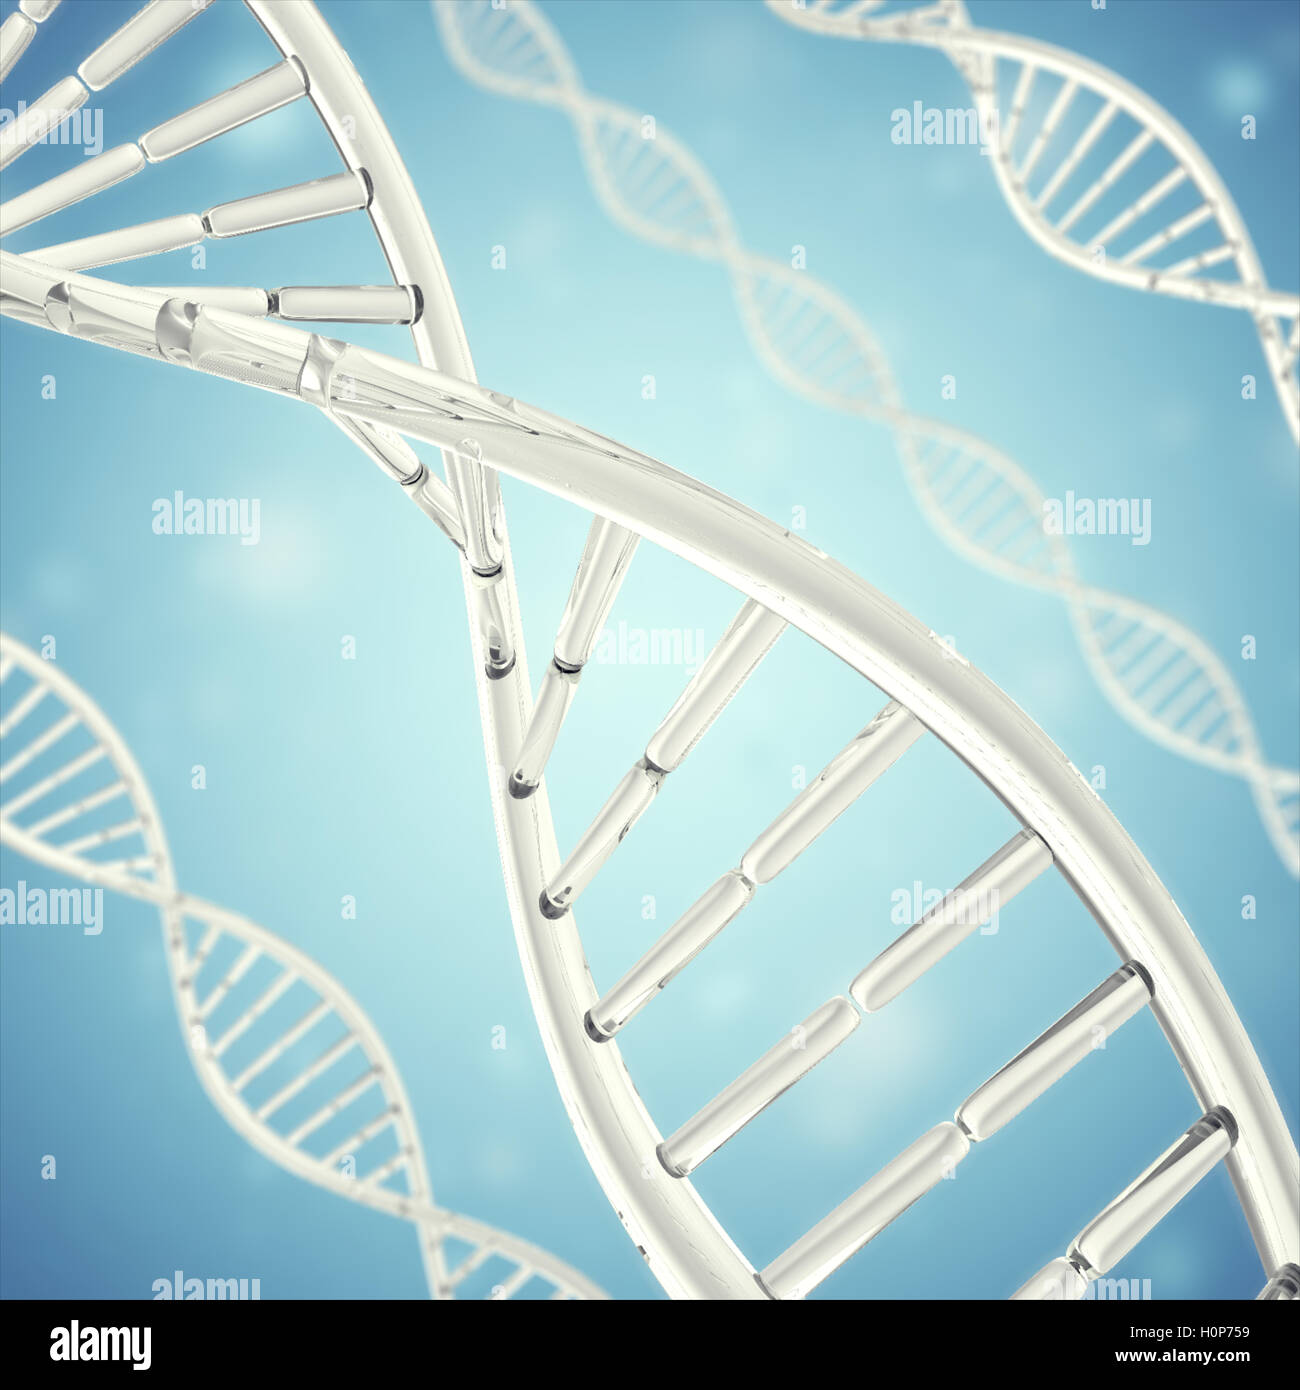 Synthetischen, künstlichen DNA-Molekül, das Konzept der Intelligenz. 3D-Rendering Stockfoto